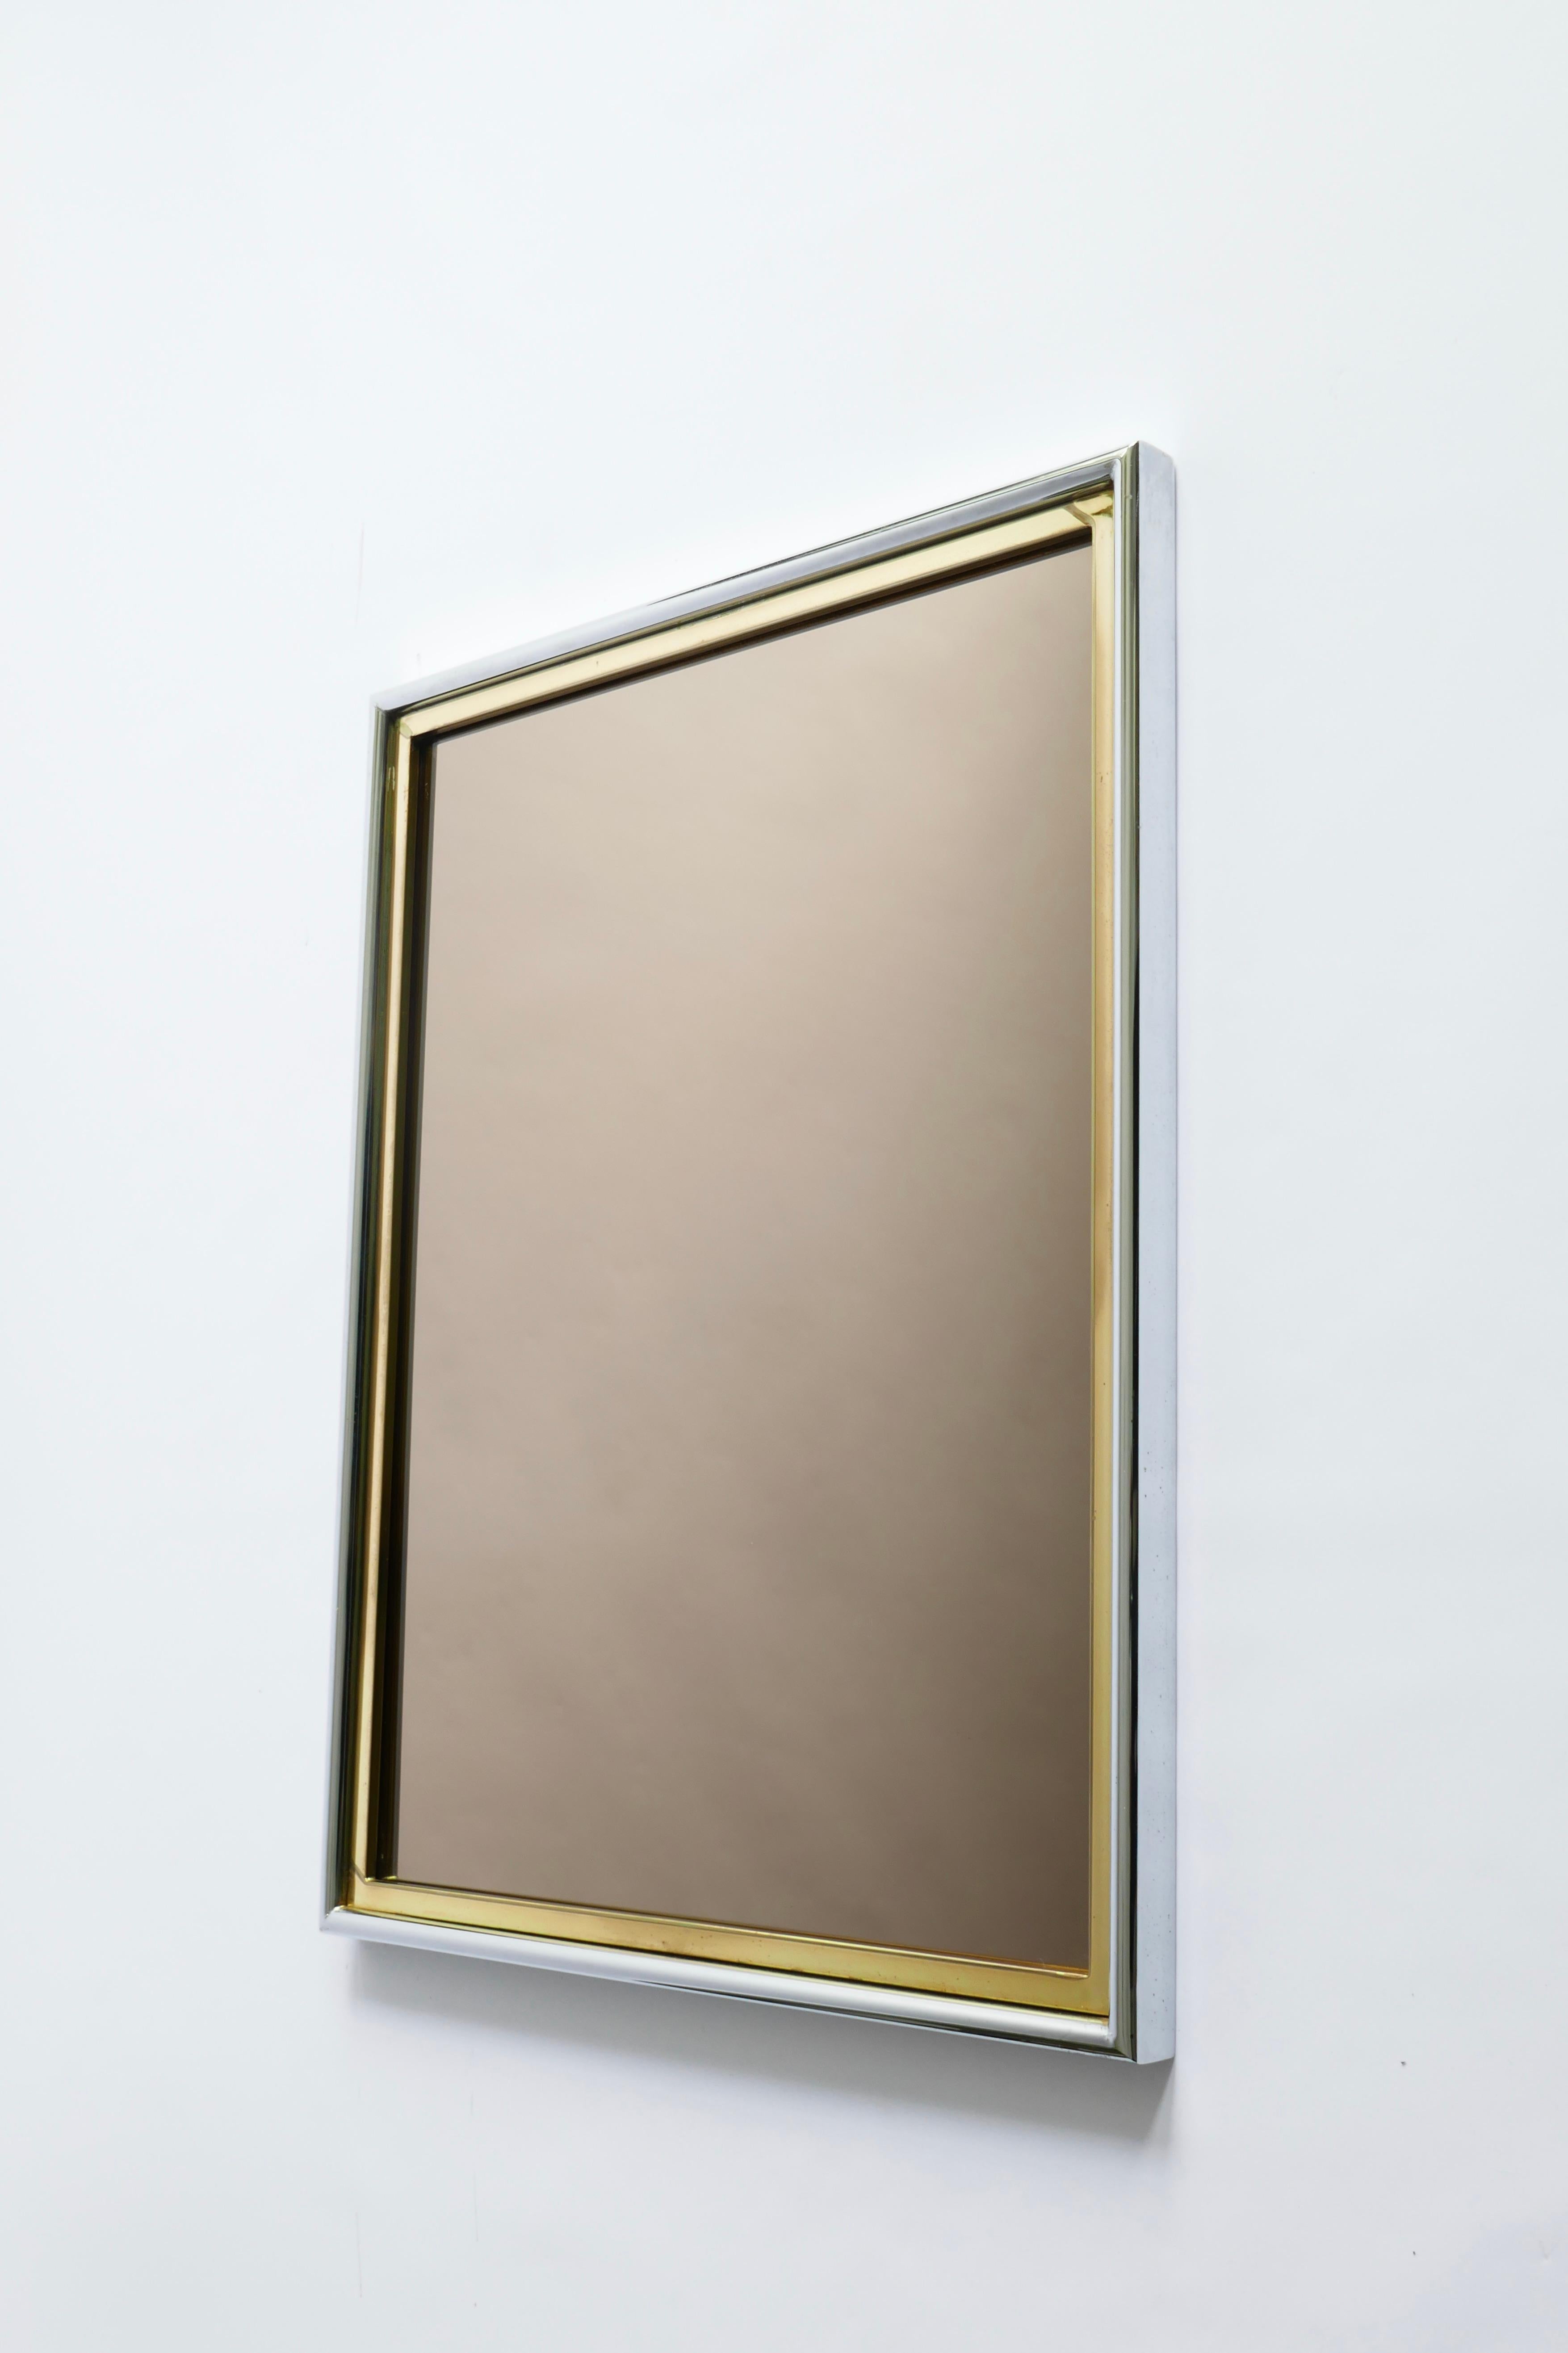 Im Stil des modernistischen Designs von Romeo Rega ein eleganter Konsolentisch mit passendem Spiegel.
Das Glas ist waagerecht angeordnet
Abmessungen:
Konsolentisch : L 130cm x T 36cm x H76cm
Spiegel: H 90 x B 70 x T 4cm
Italien, 1970er Jahre.